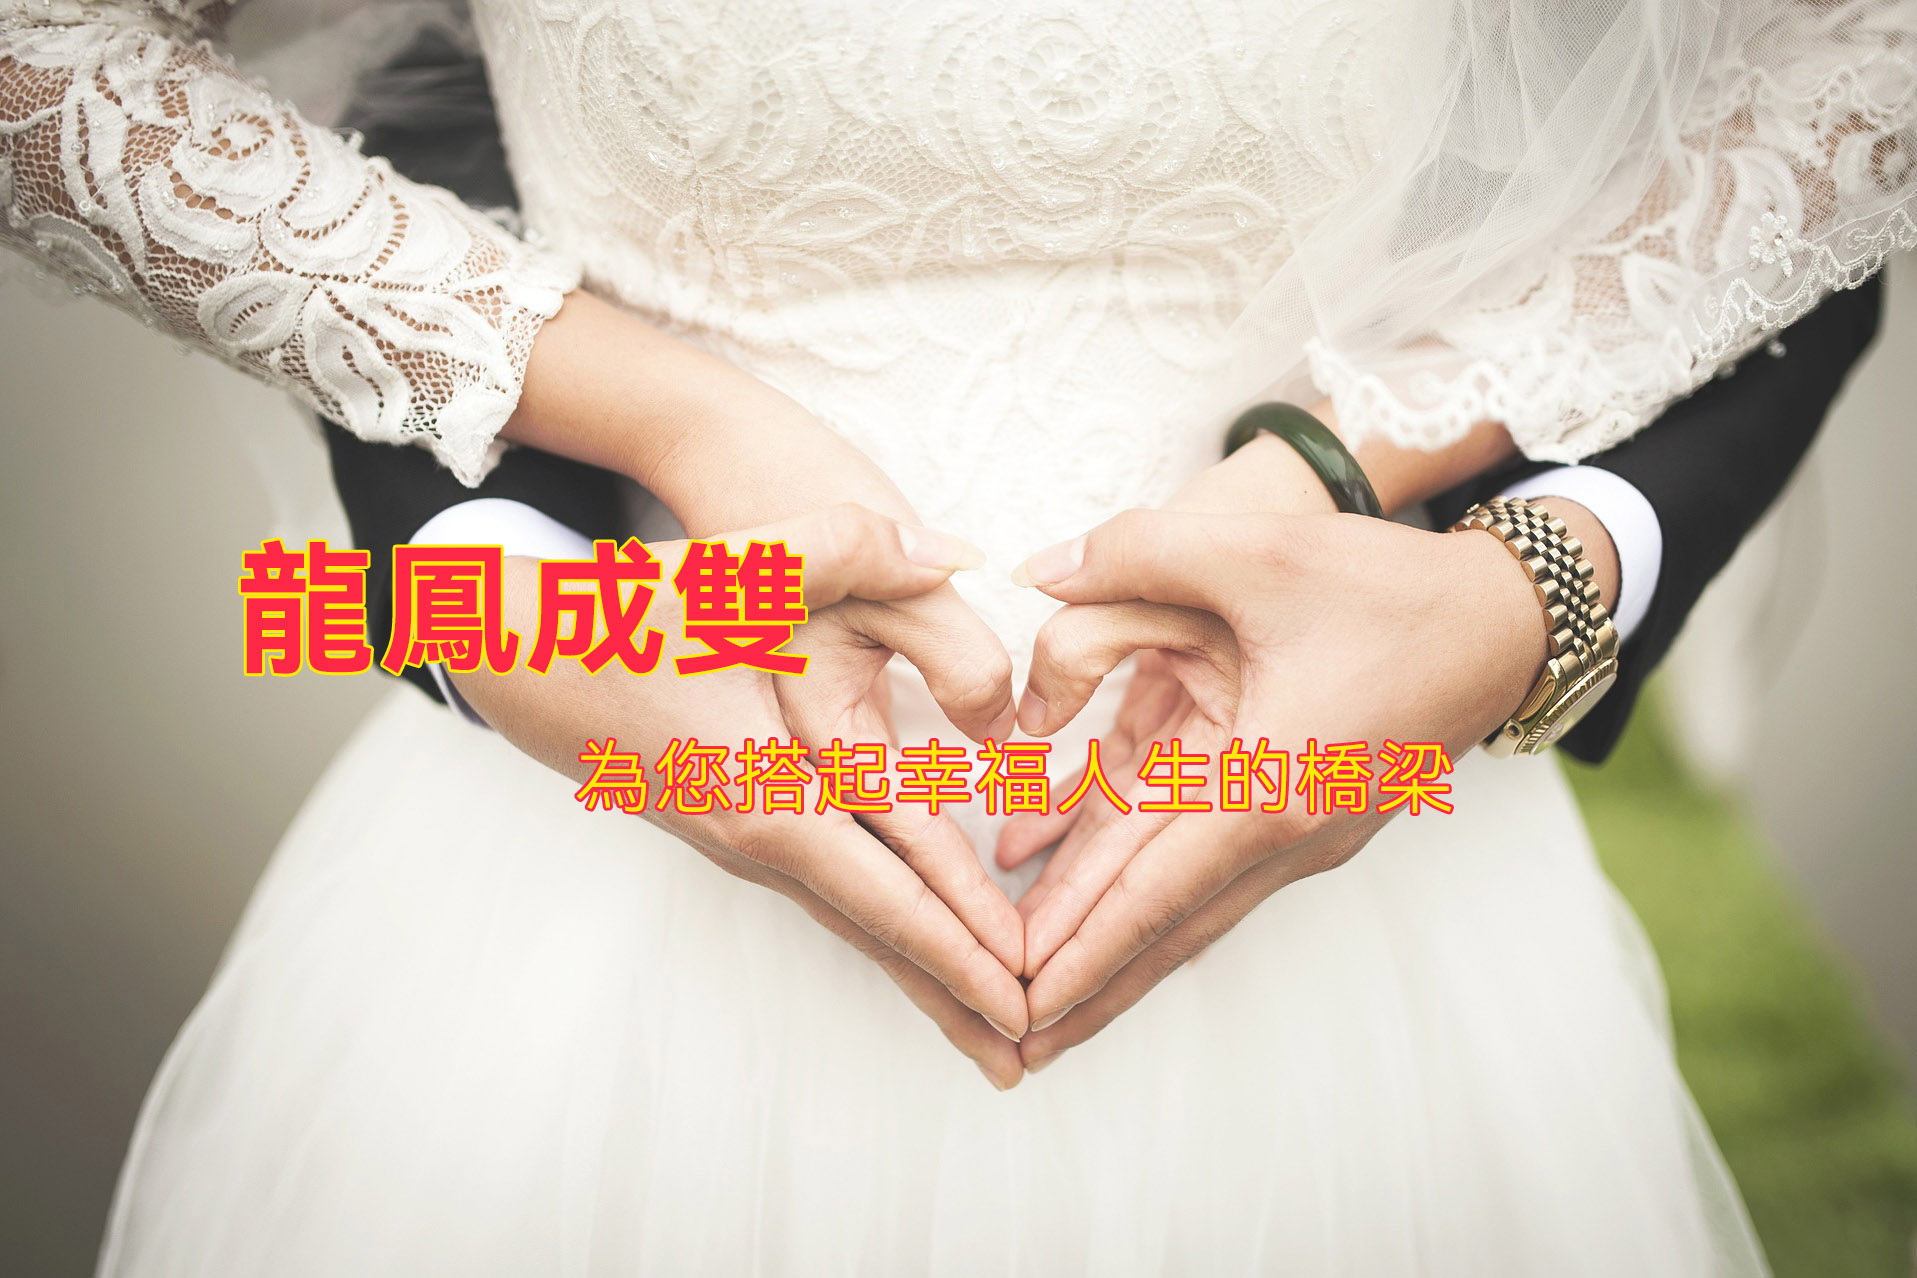 大陸新娘,婚姻仲介,跨國婚姻仲介,越南新娘在台灣,台灣相親,費用,百年好合婚姻仲介